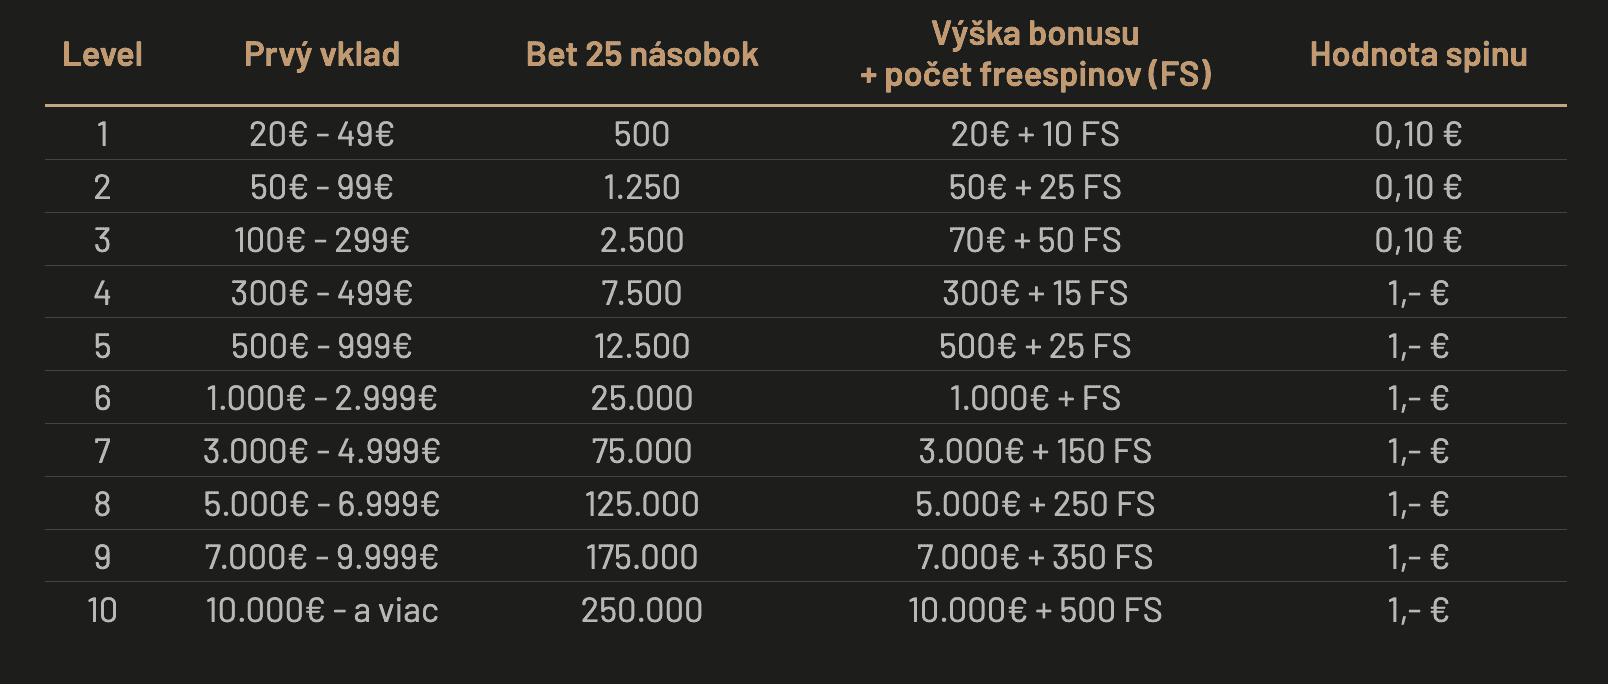 Tabuľka bonusových úrovní pre vkladový bonus v Eurogold casino